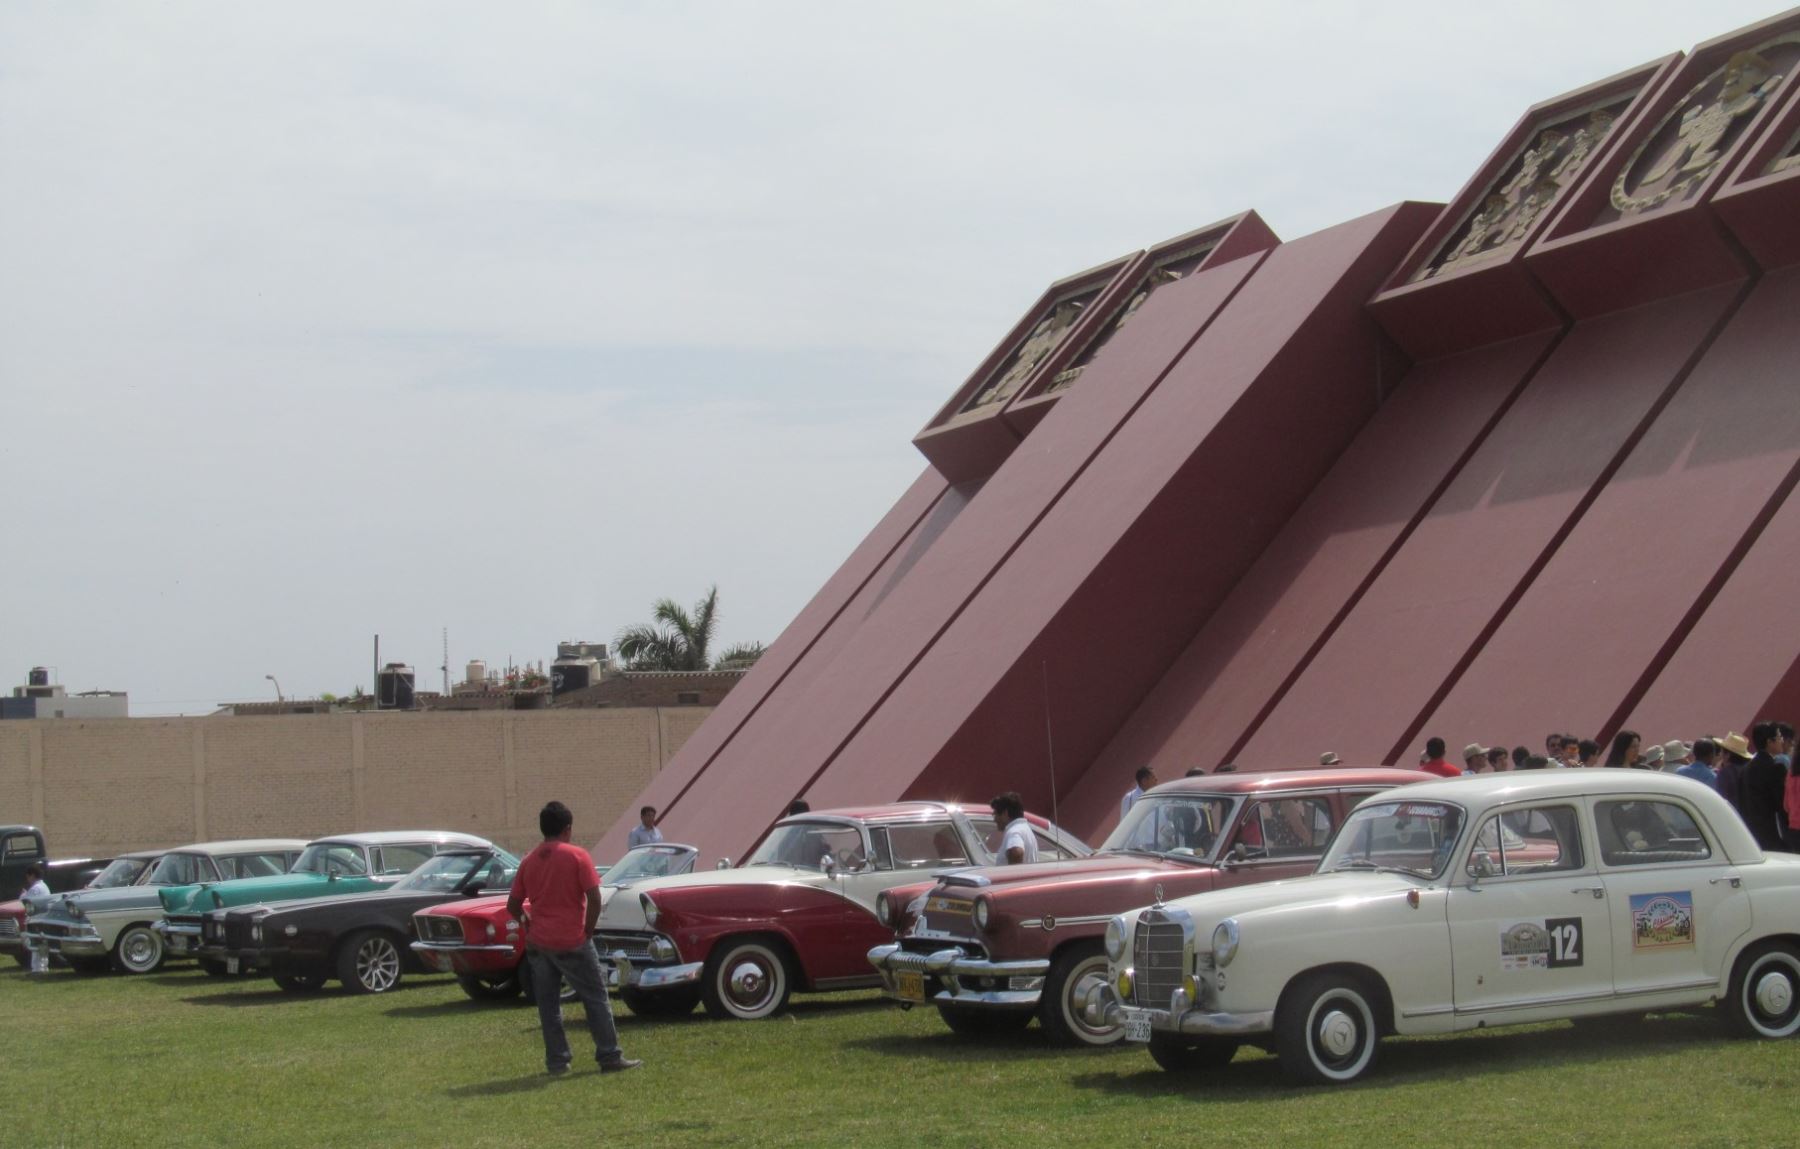 Museo del Automóvil - Colección Nicolini